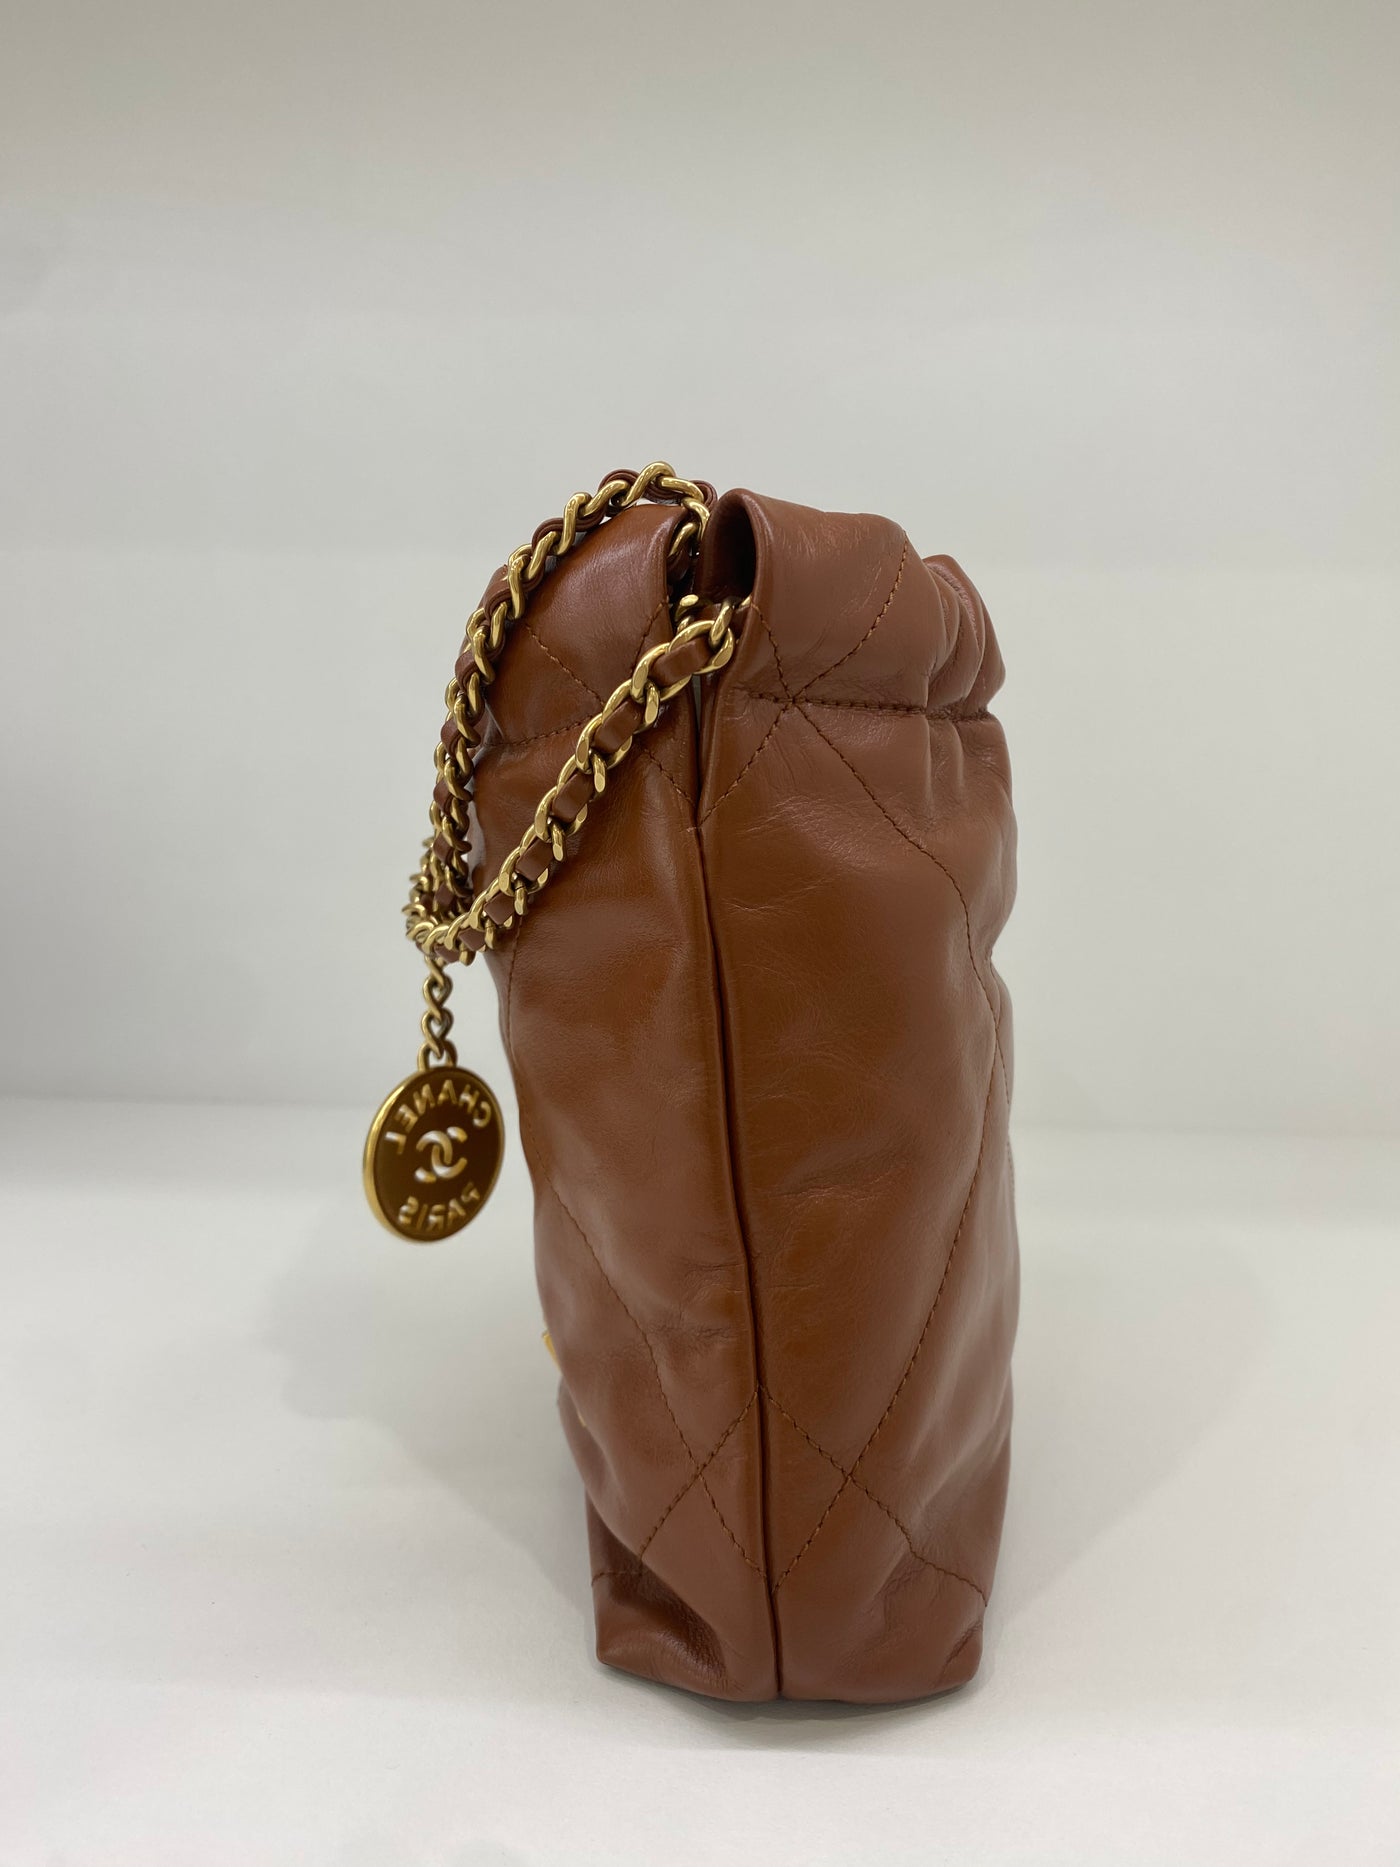 Chanel 22 Bag Mini - Caramel GHW